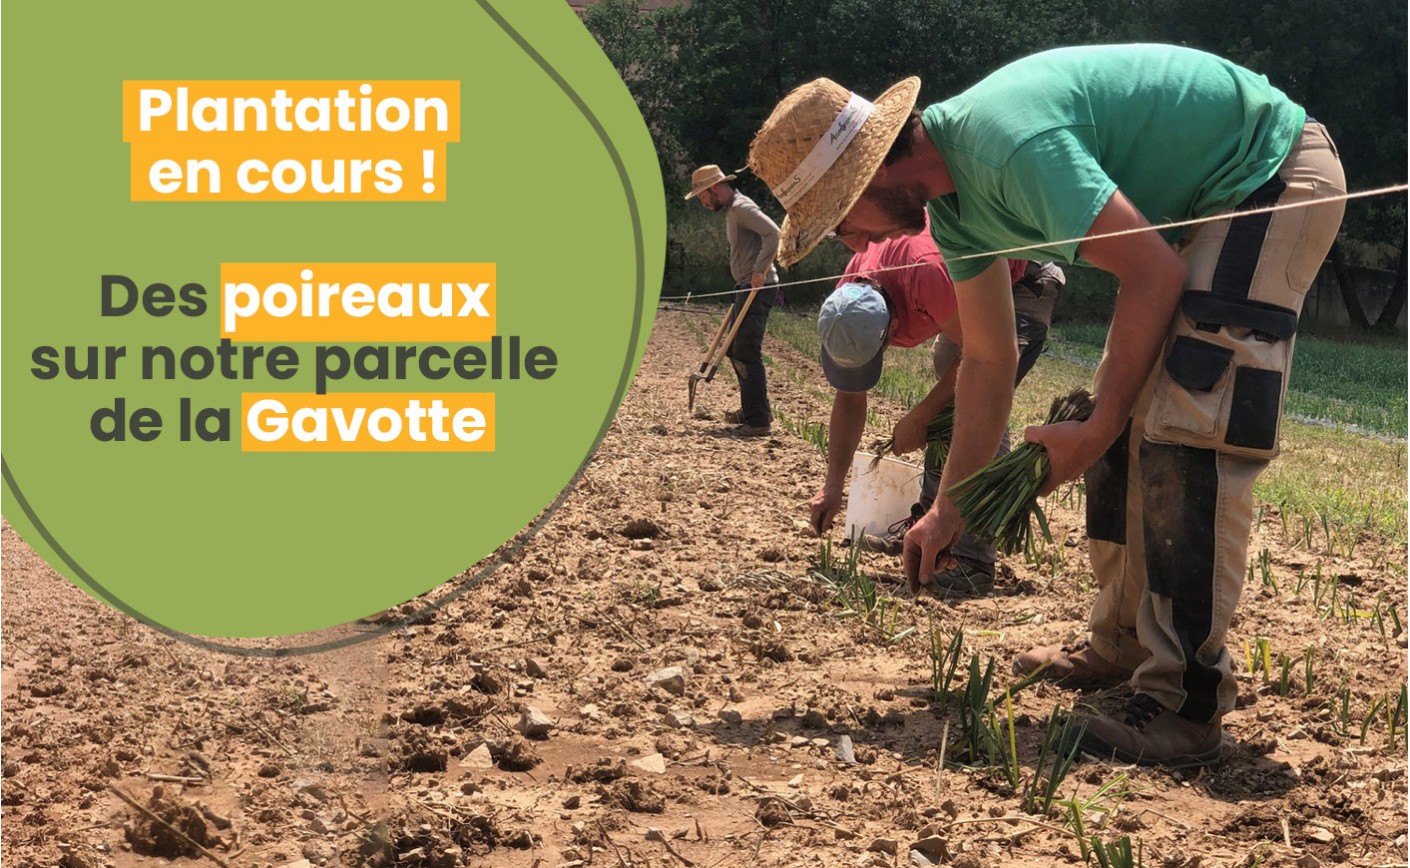 Plantation en cours des poireaux au Potager Municipal de Châteauneuf-le-Rouge : une récolte prometteuse cet automne !